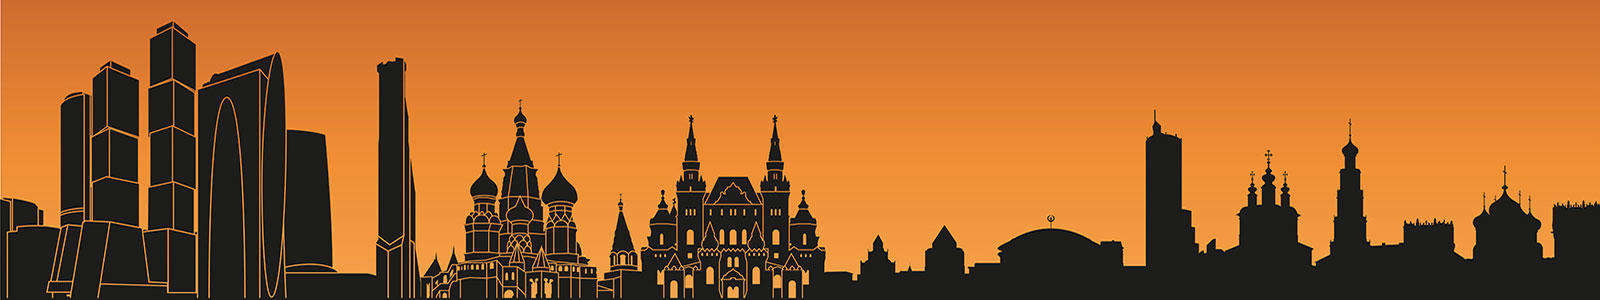 №1675 - Контуры достопримечательностей Москвы в оранжевых тонах